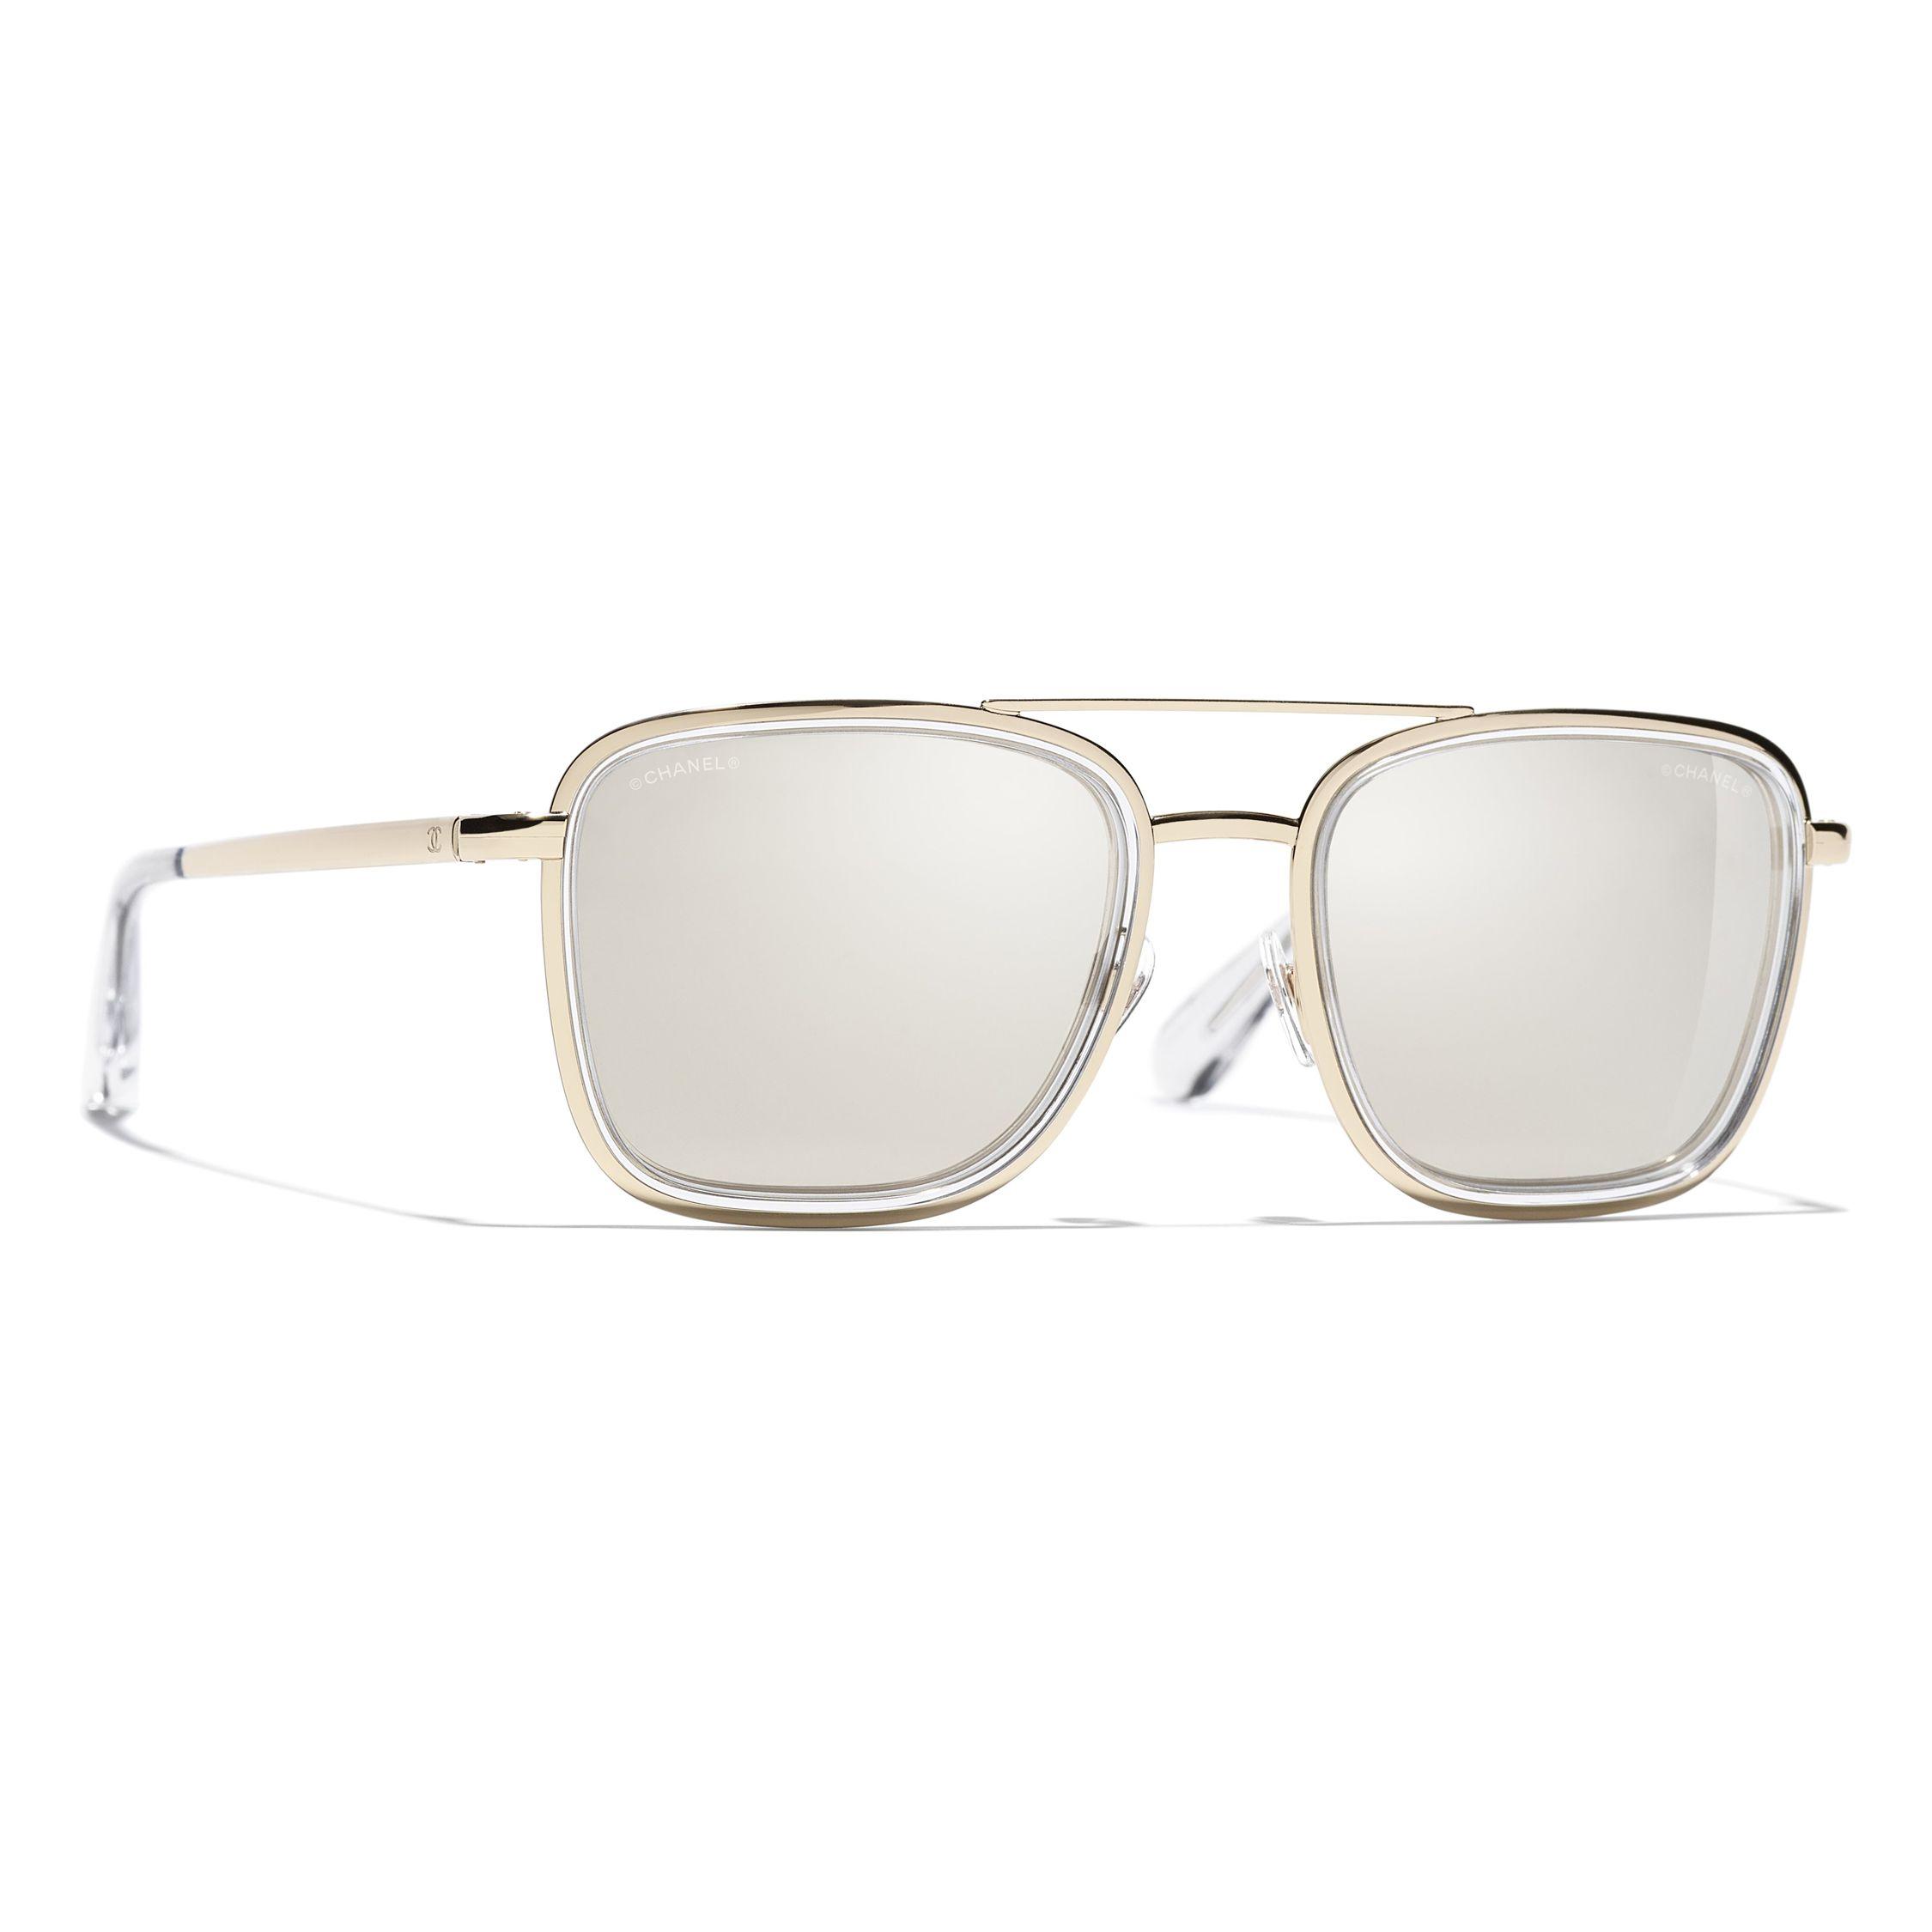 Chanel Square Sunglasses Ch4241 Light Gold/mirror Gold in White